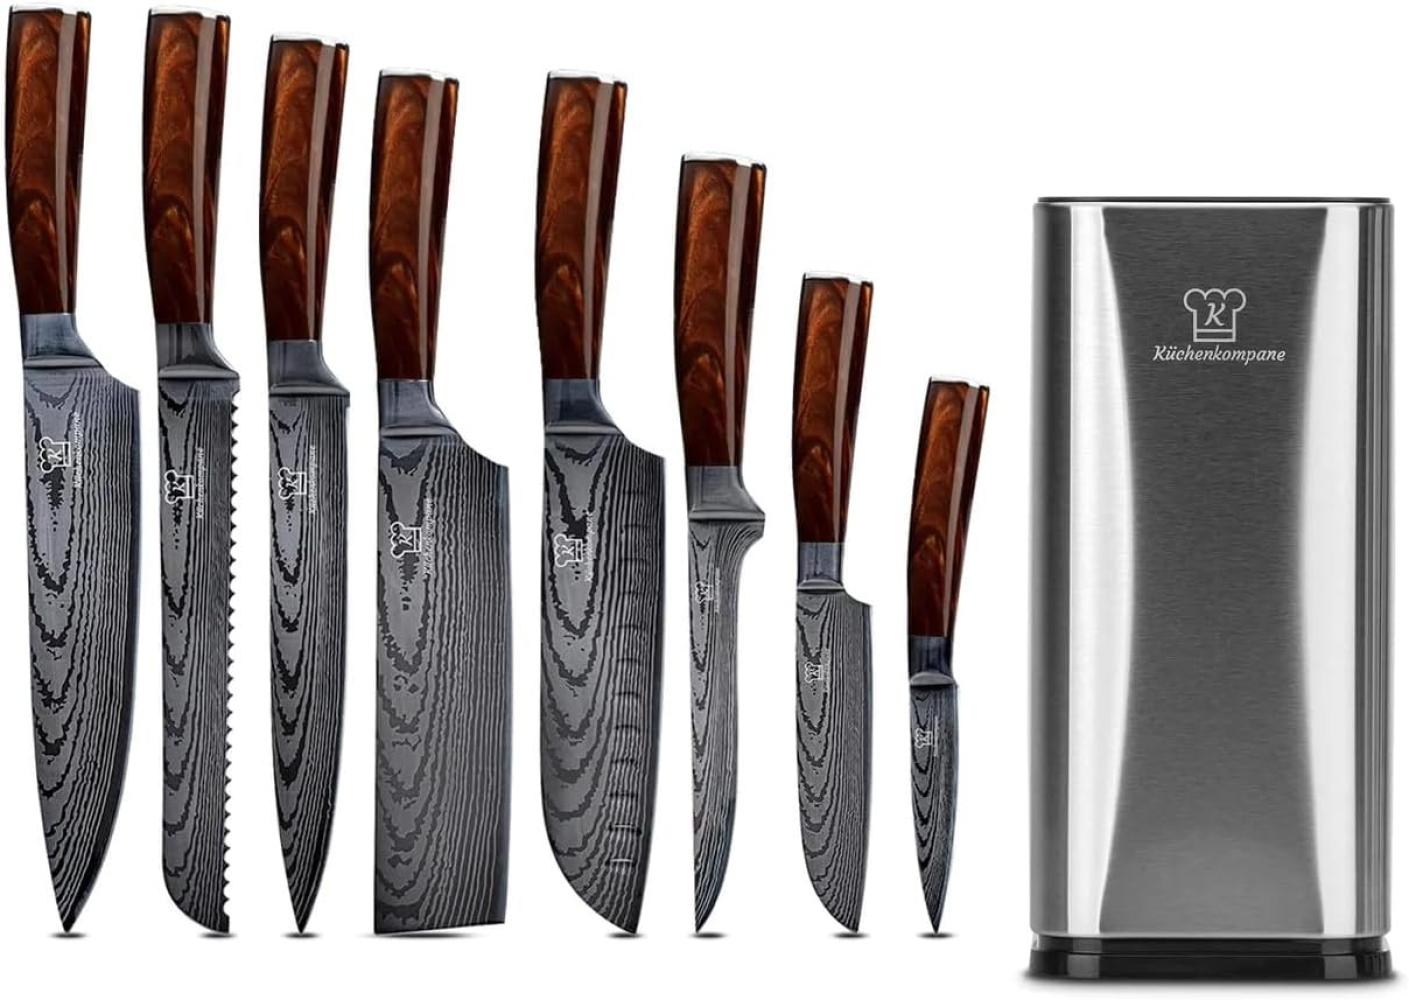 Messerset asiatisch mit magnetischer Holzleiste - Kurai Küchenmesser - 8-teiliges Messerset mit handgeschmiedeten Edelstahlklingen und Pakkaholz Griff - Rostfrei & scharf Bild 1